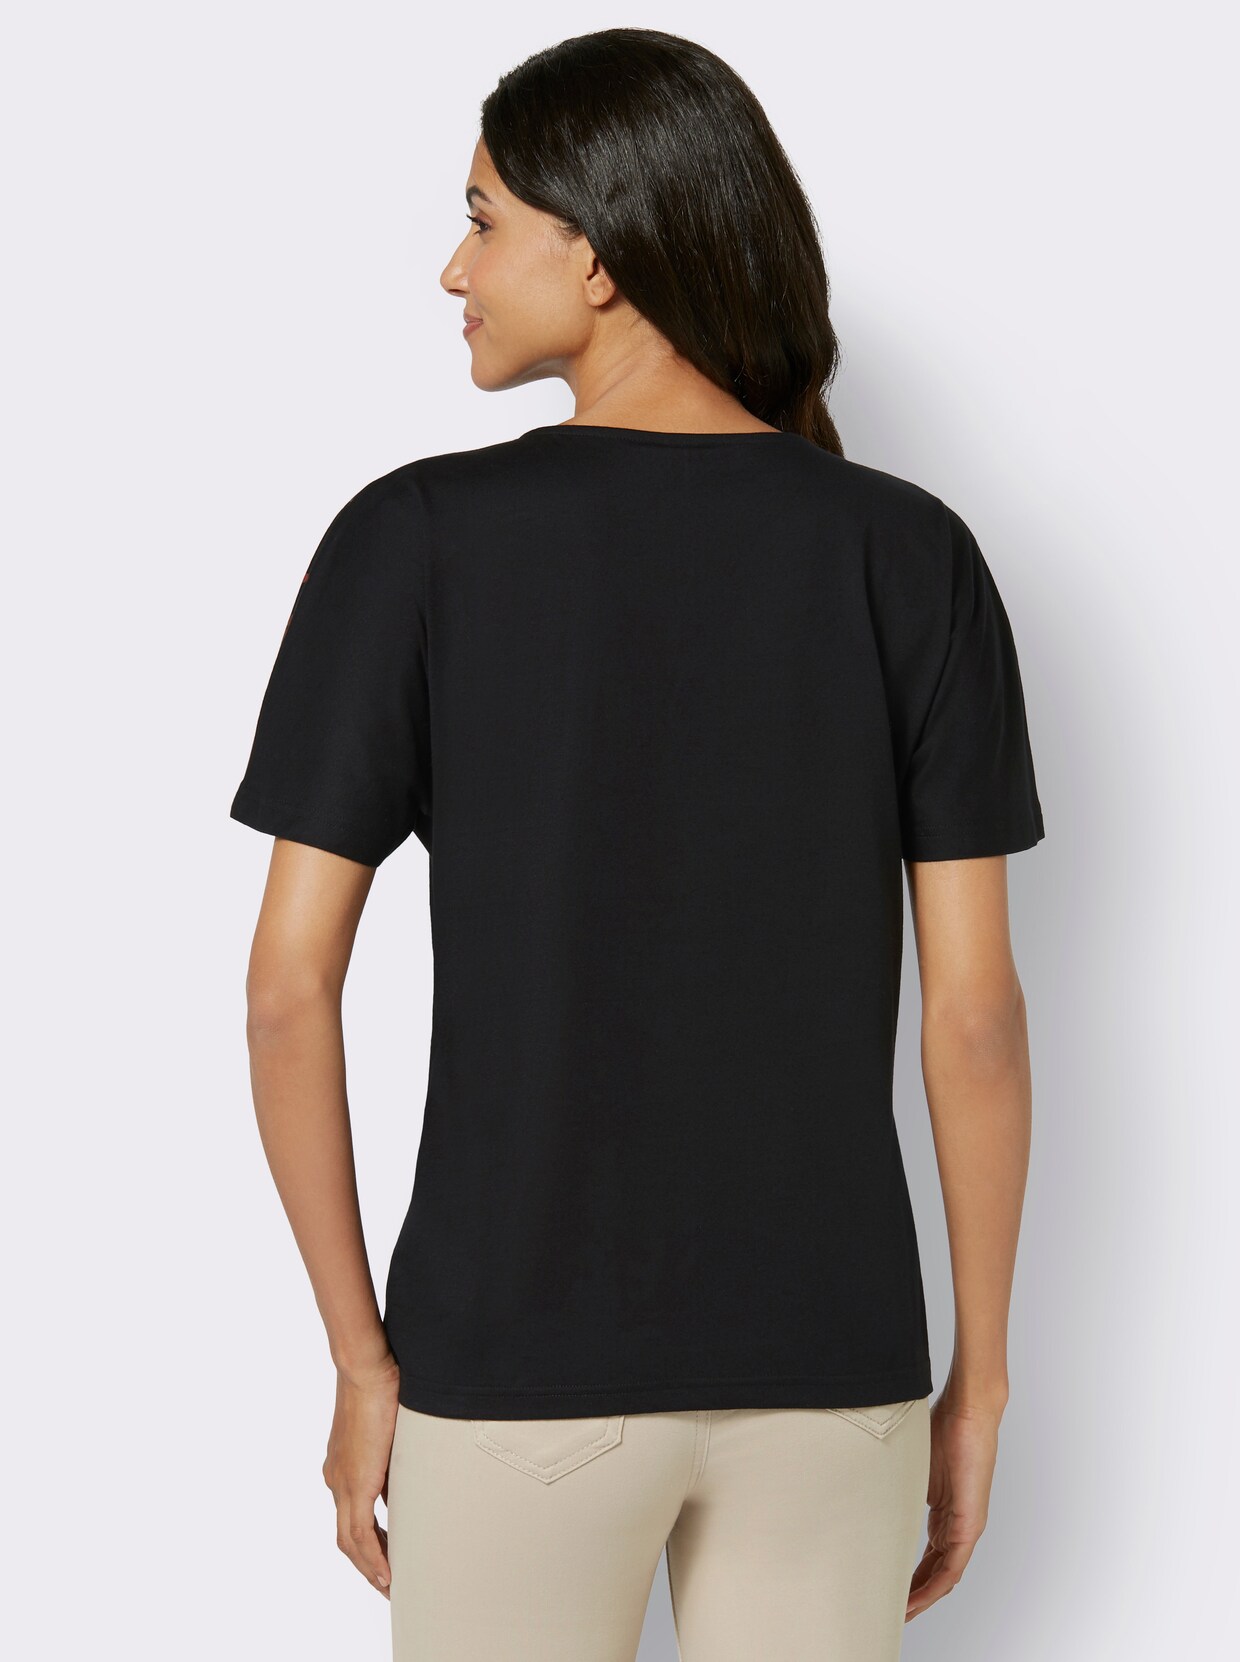 Tričko s krátkým rukávem - černá-vzor